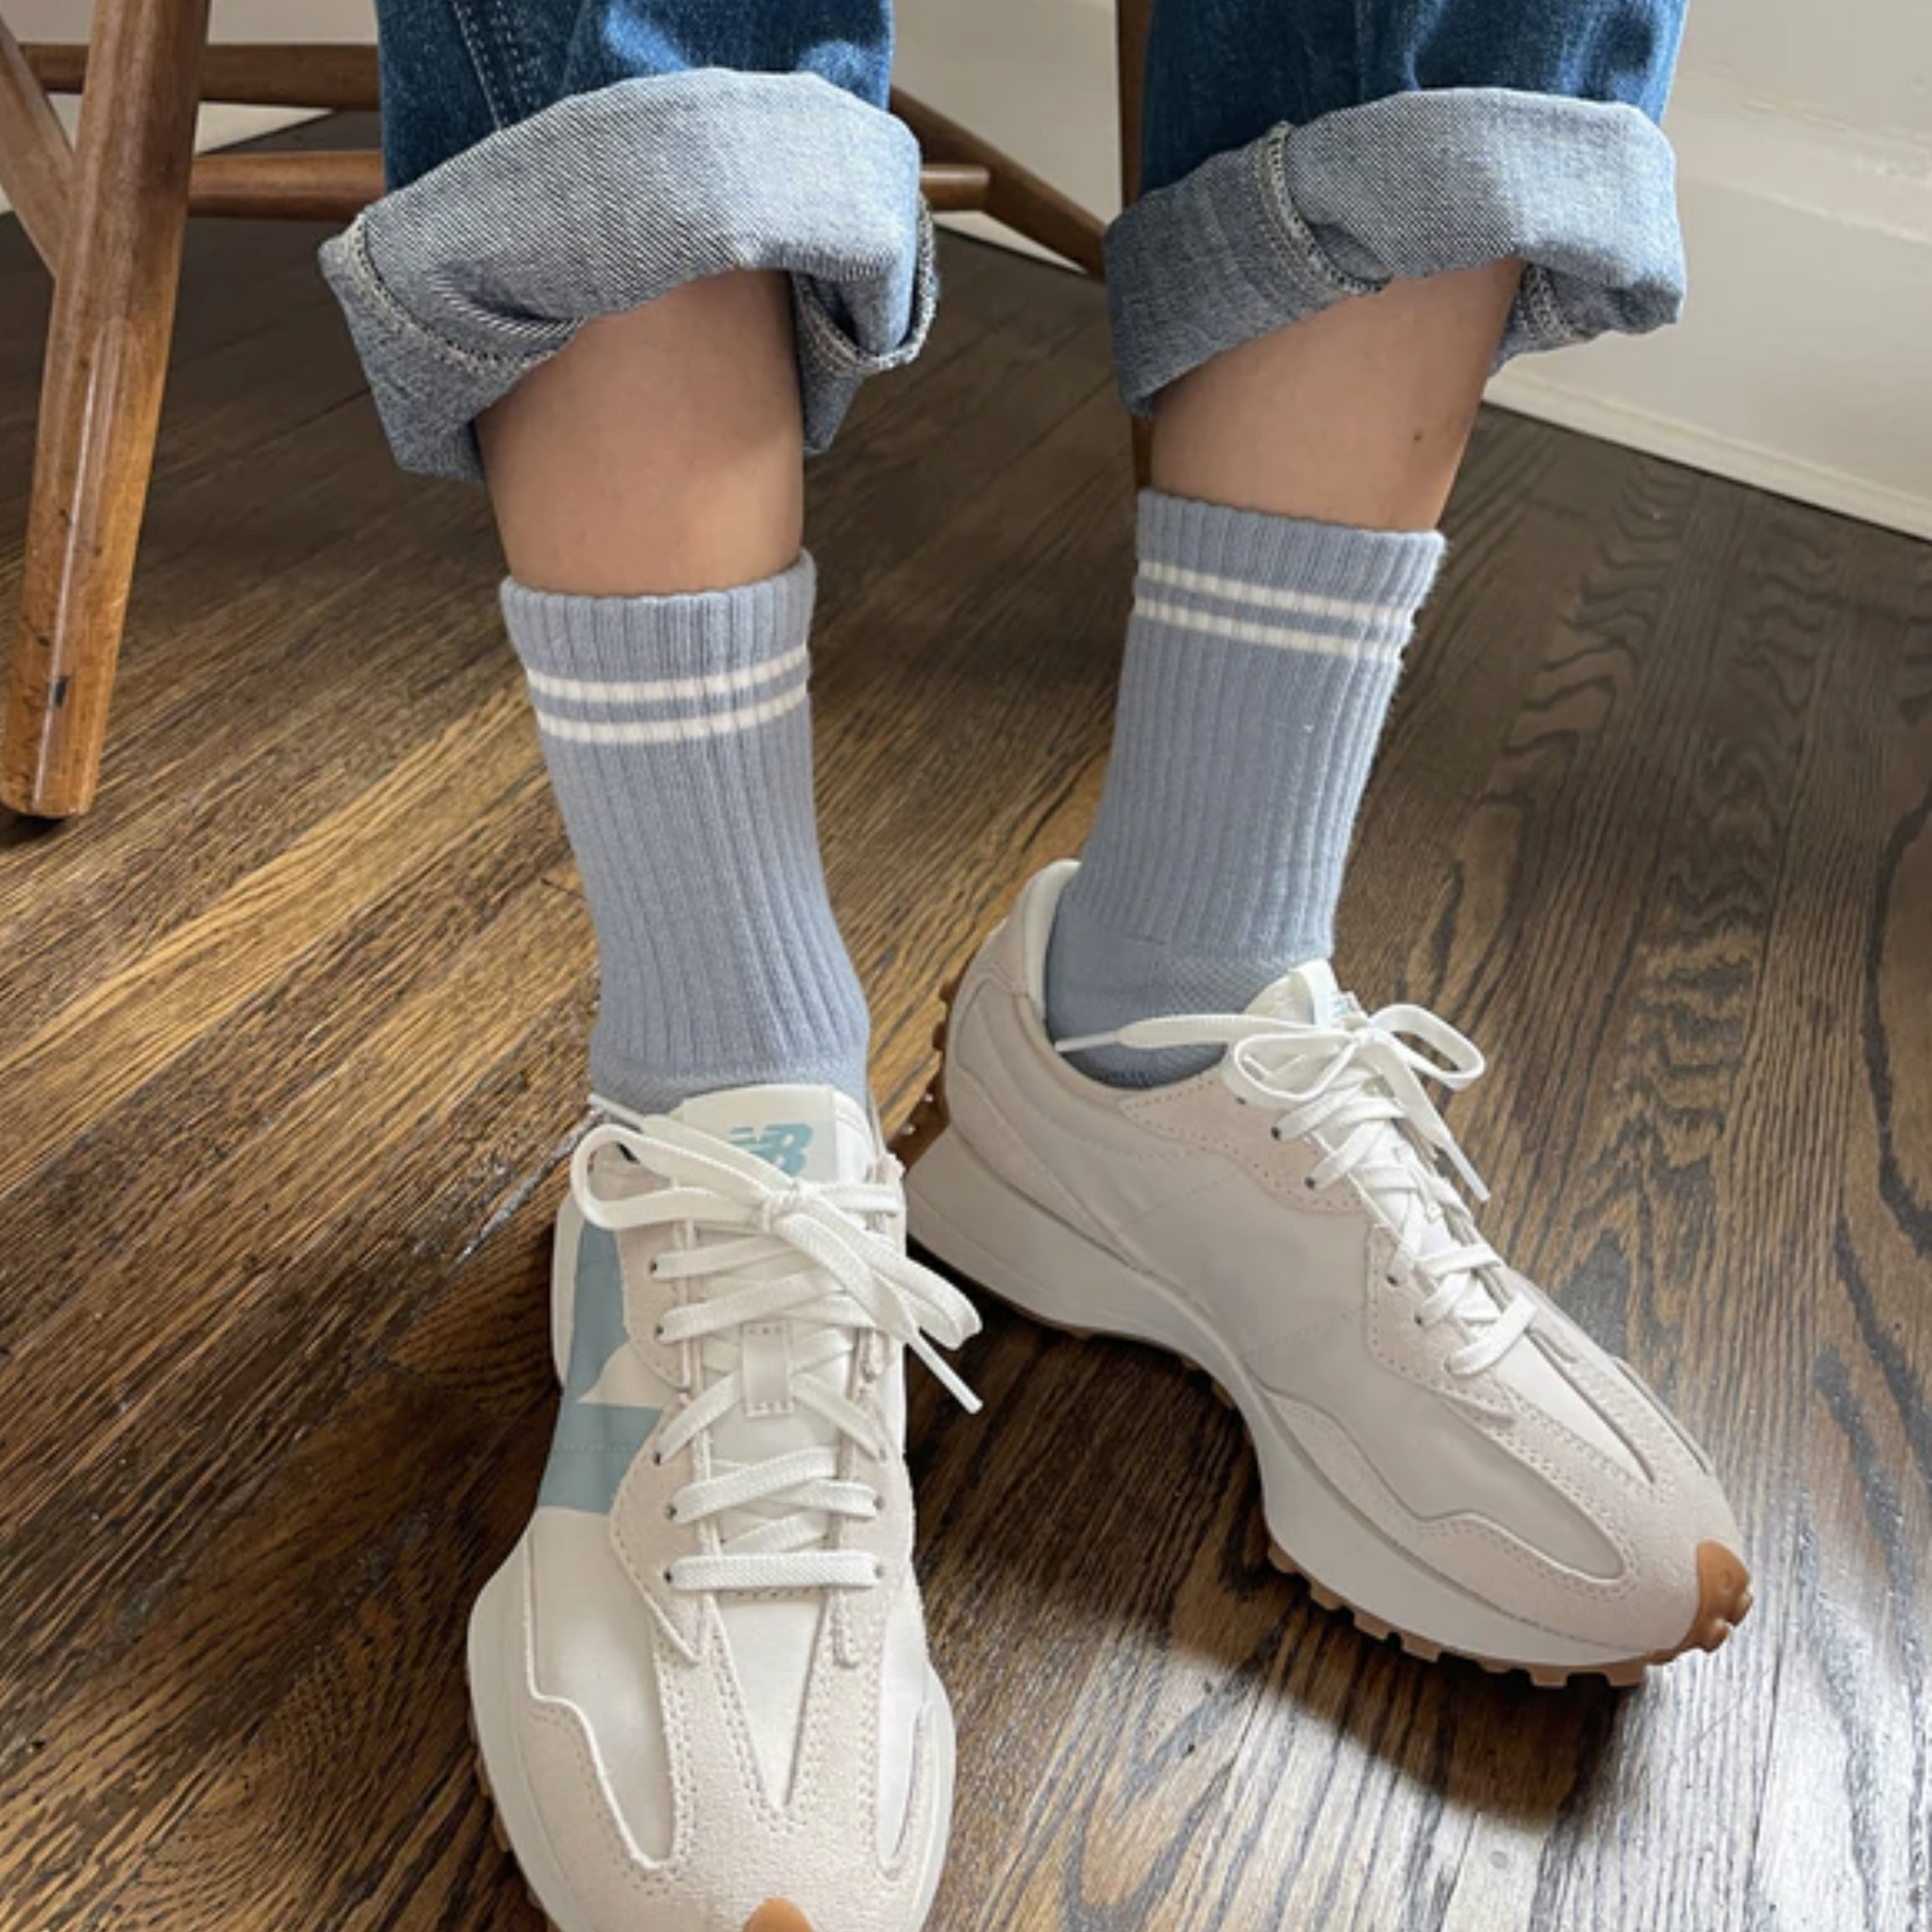 Le Bon Shoppe Boyfriend Socks in Blue Grey